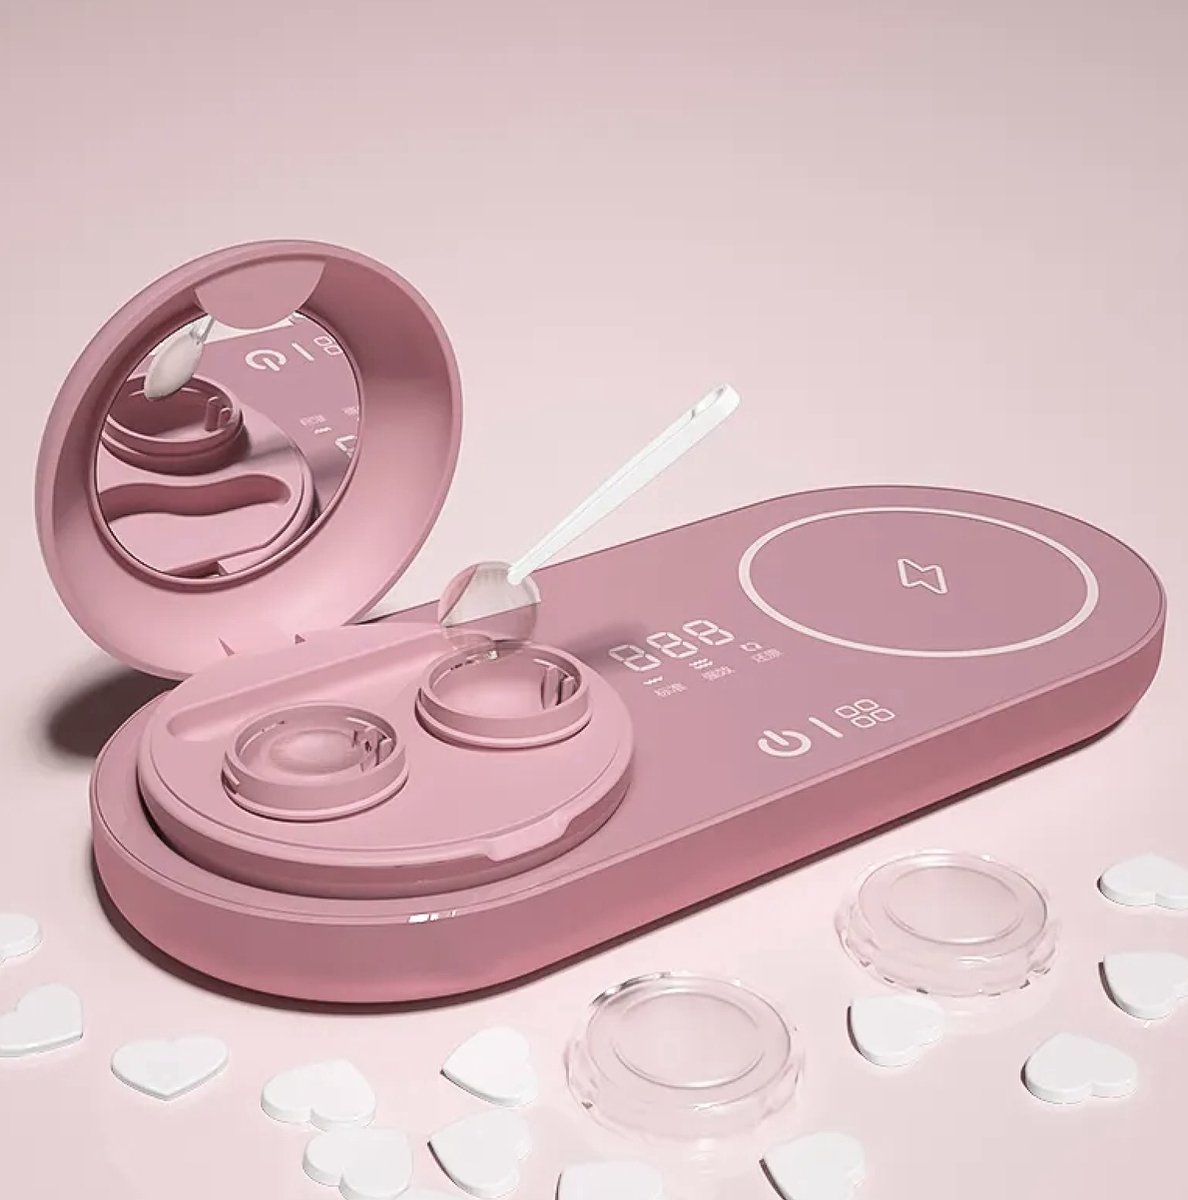 yermin beauty - contactlenzen reiniger - Ultrasone contactlensreiniger - ultrasone automatische reiniger- contactlensreiniger met USB-oplader - klein en draagbaar - geschikt voor het reinigen van alle contactlenzen - roze